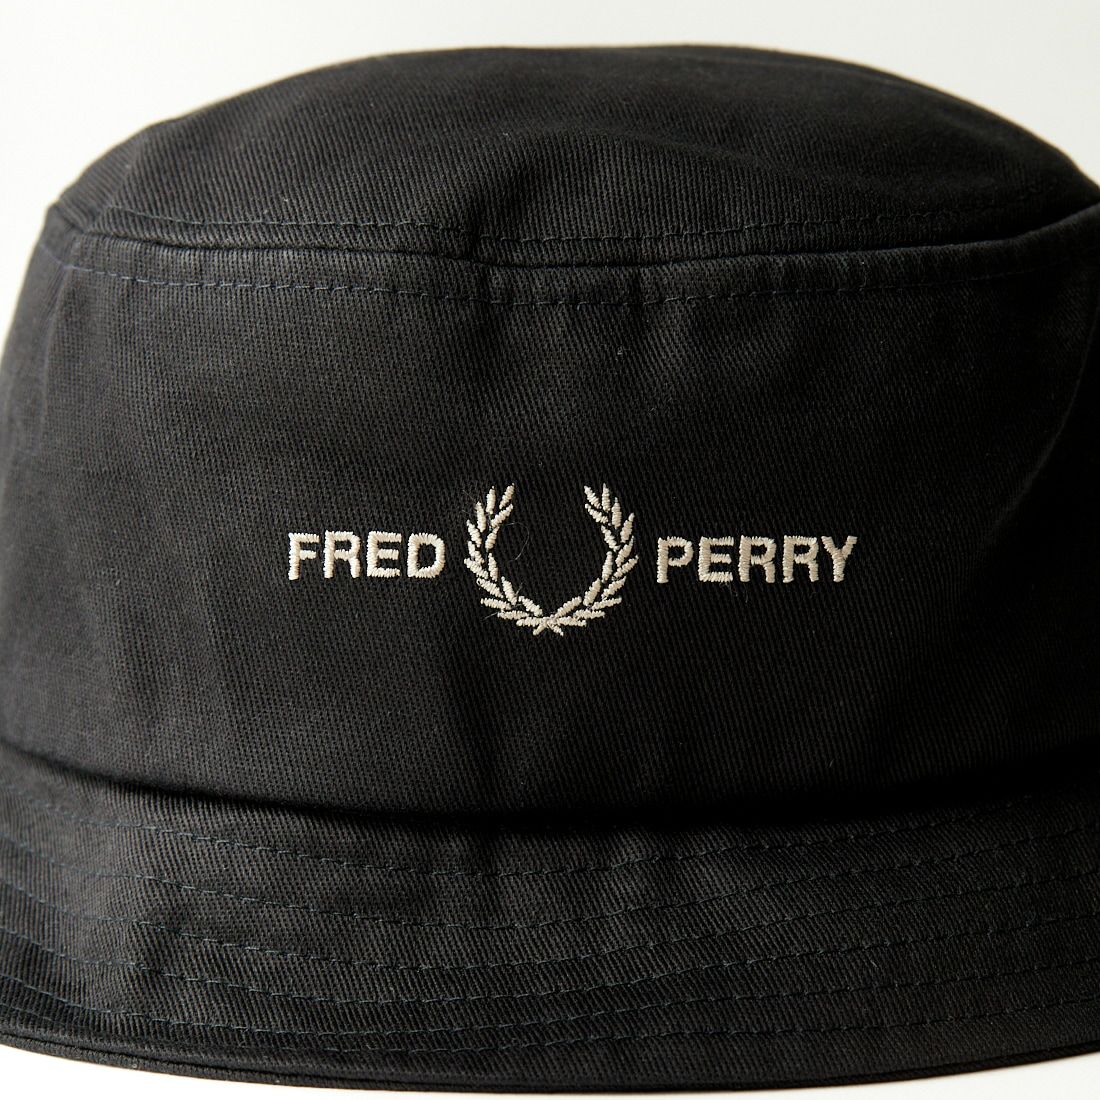 FRED PERRY [フレッドペリー] グラフィックブランド ツイルバケットハット [HW4631] V53 BLACK